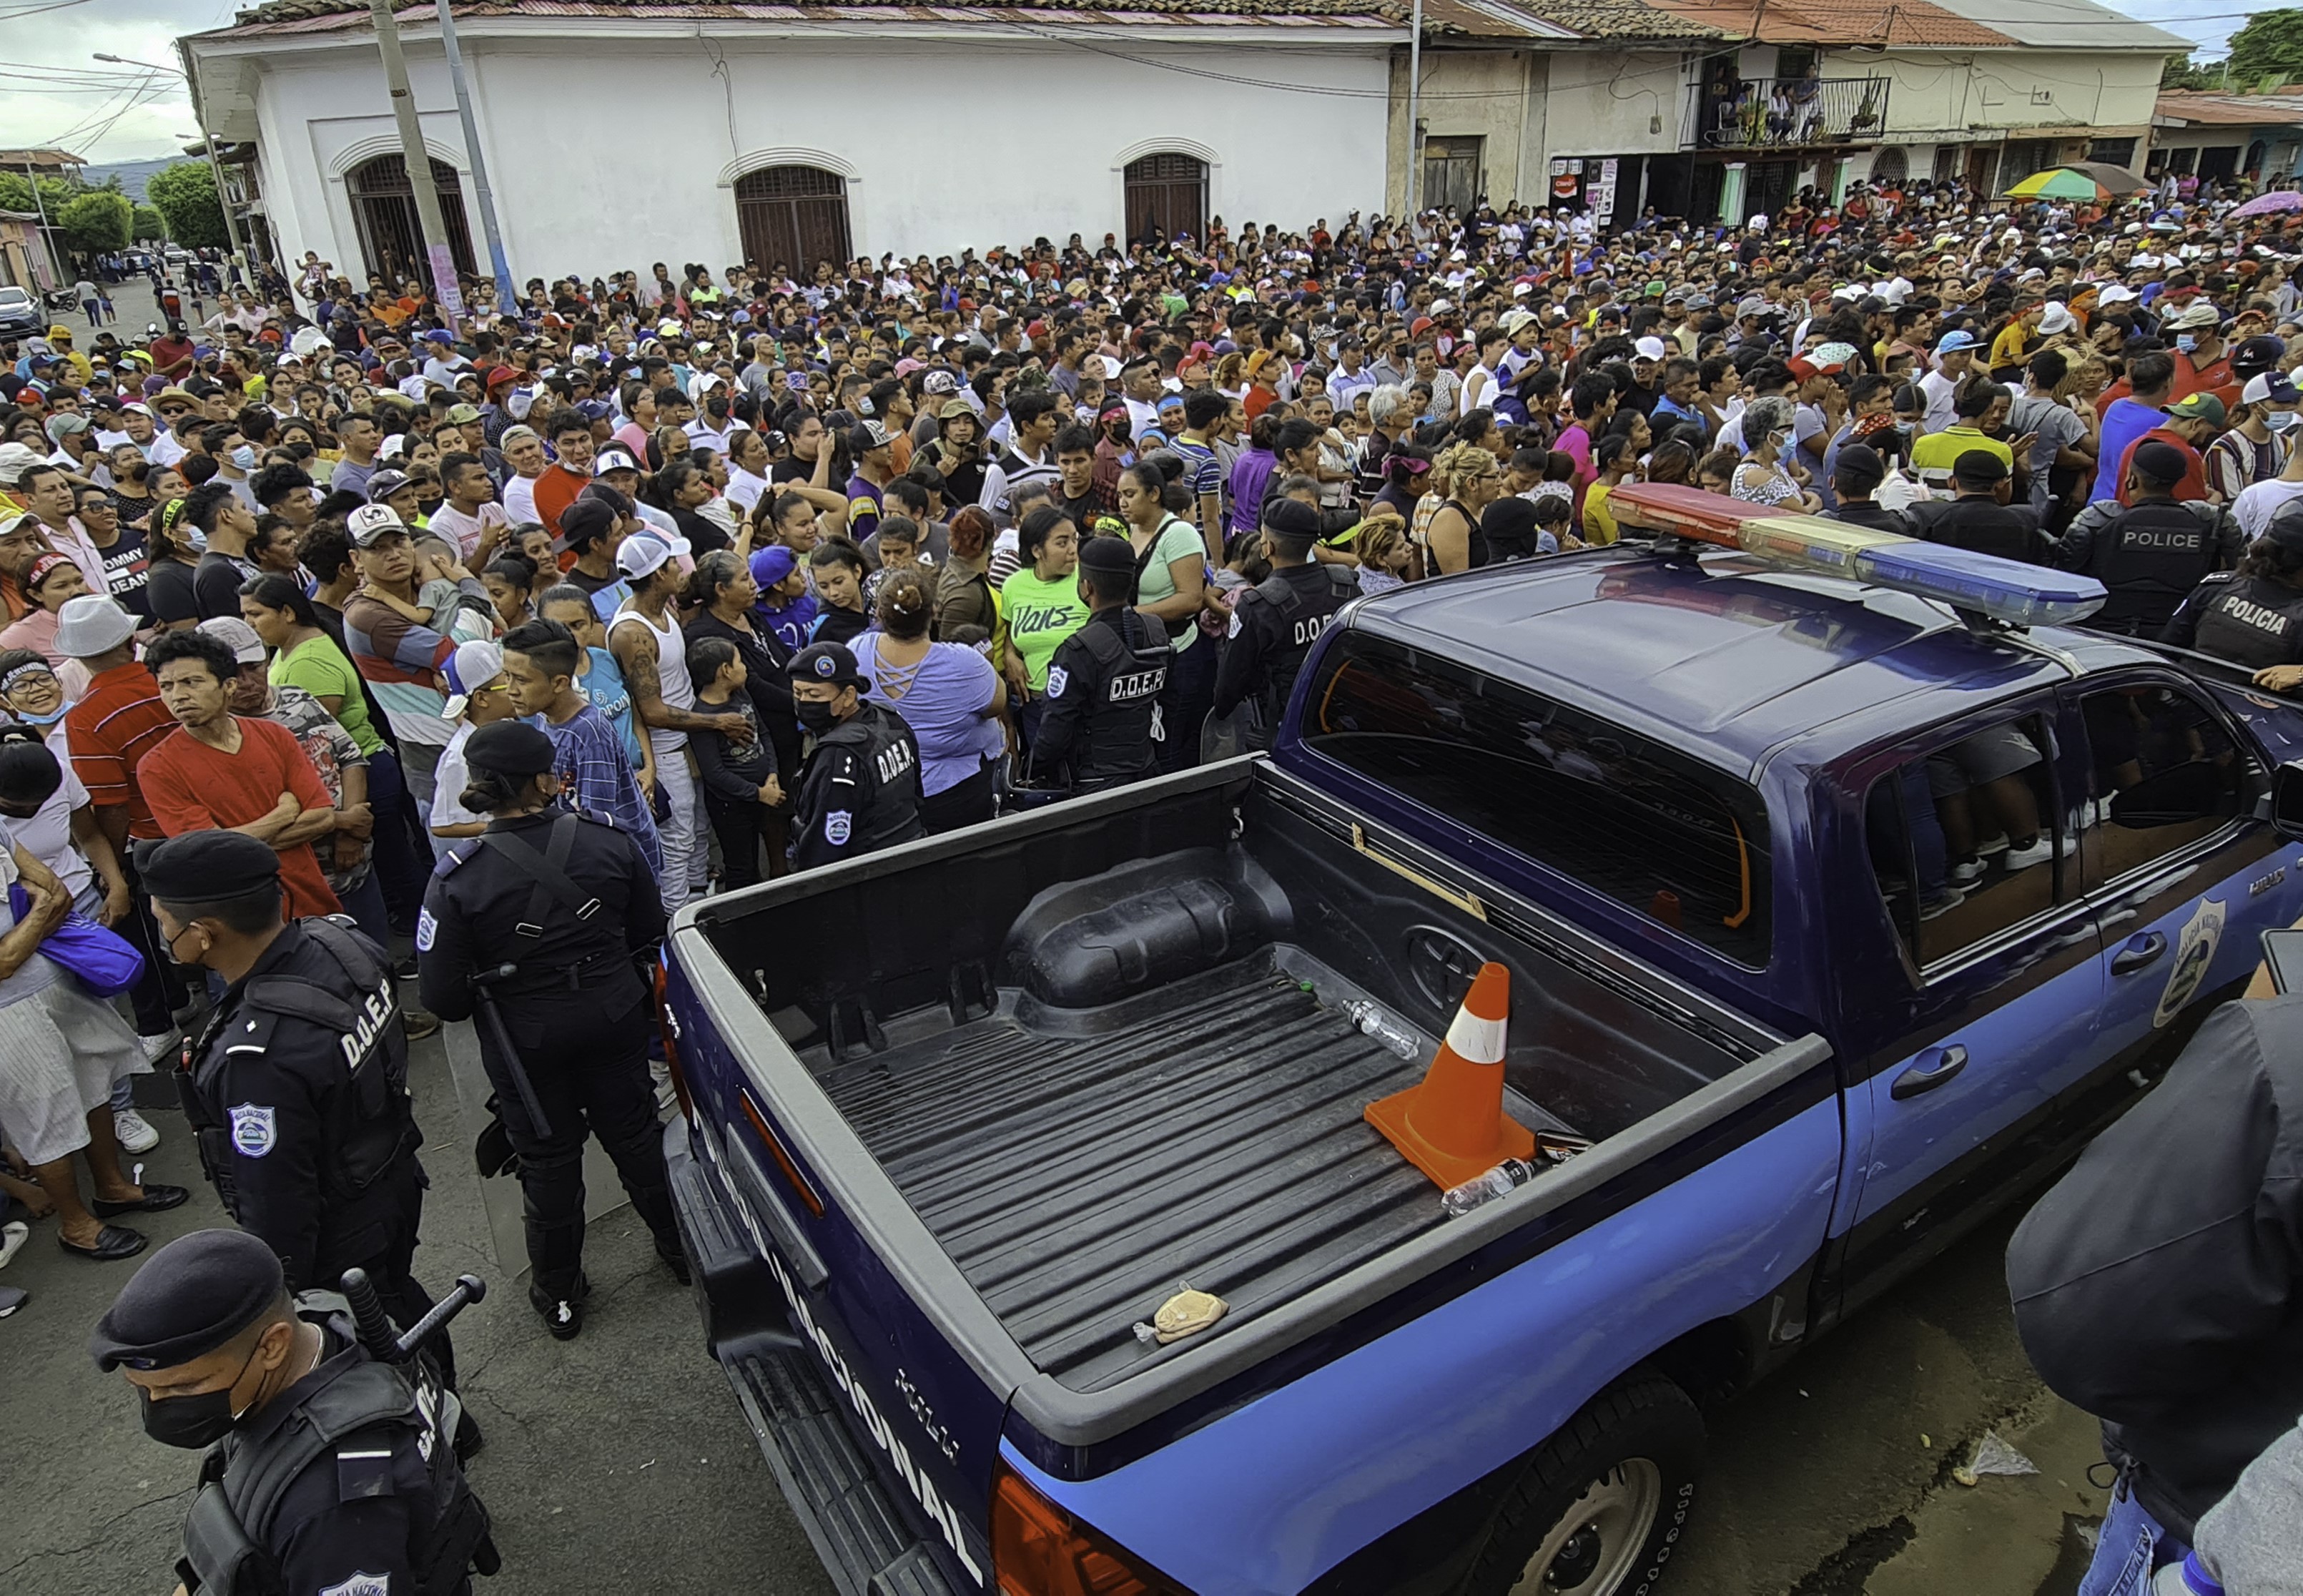 AFP | Unidades de la policía de Nicaragua en medio de una multitud de religiosos, los cuales participan de una procesión